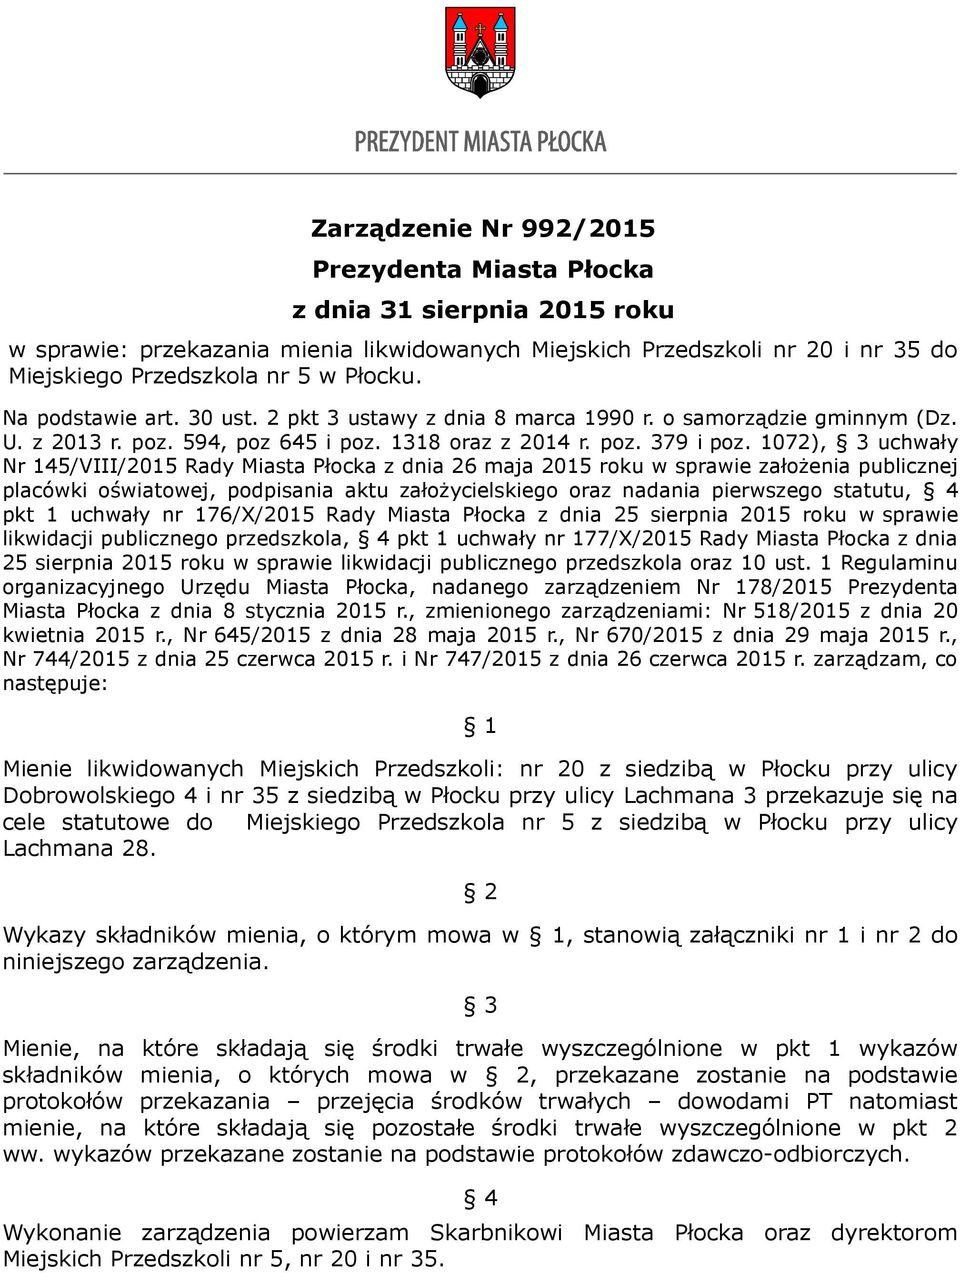 1072), 3 uchwały Nr 145/VIII/2015 Rady Miasta Płocka z dnia 26 maja 2015 roku w sprawie założenia publicznej placówki oświatowej, podpisania aktu założycielskiego oraz nadania pierwszego statutu, 4